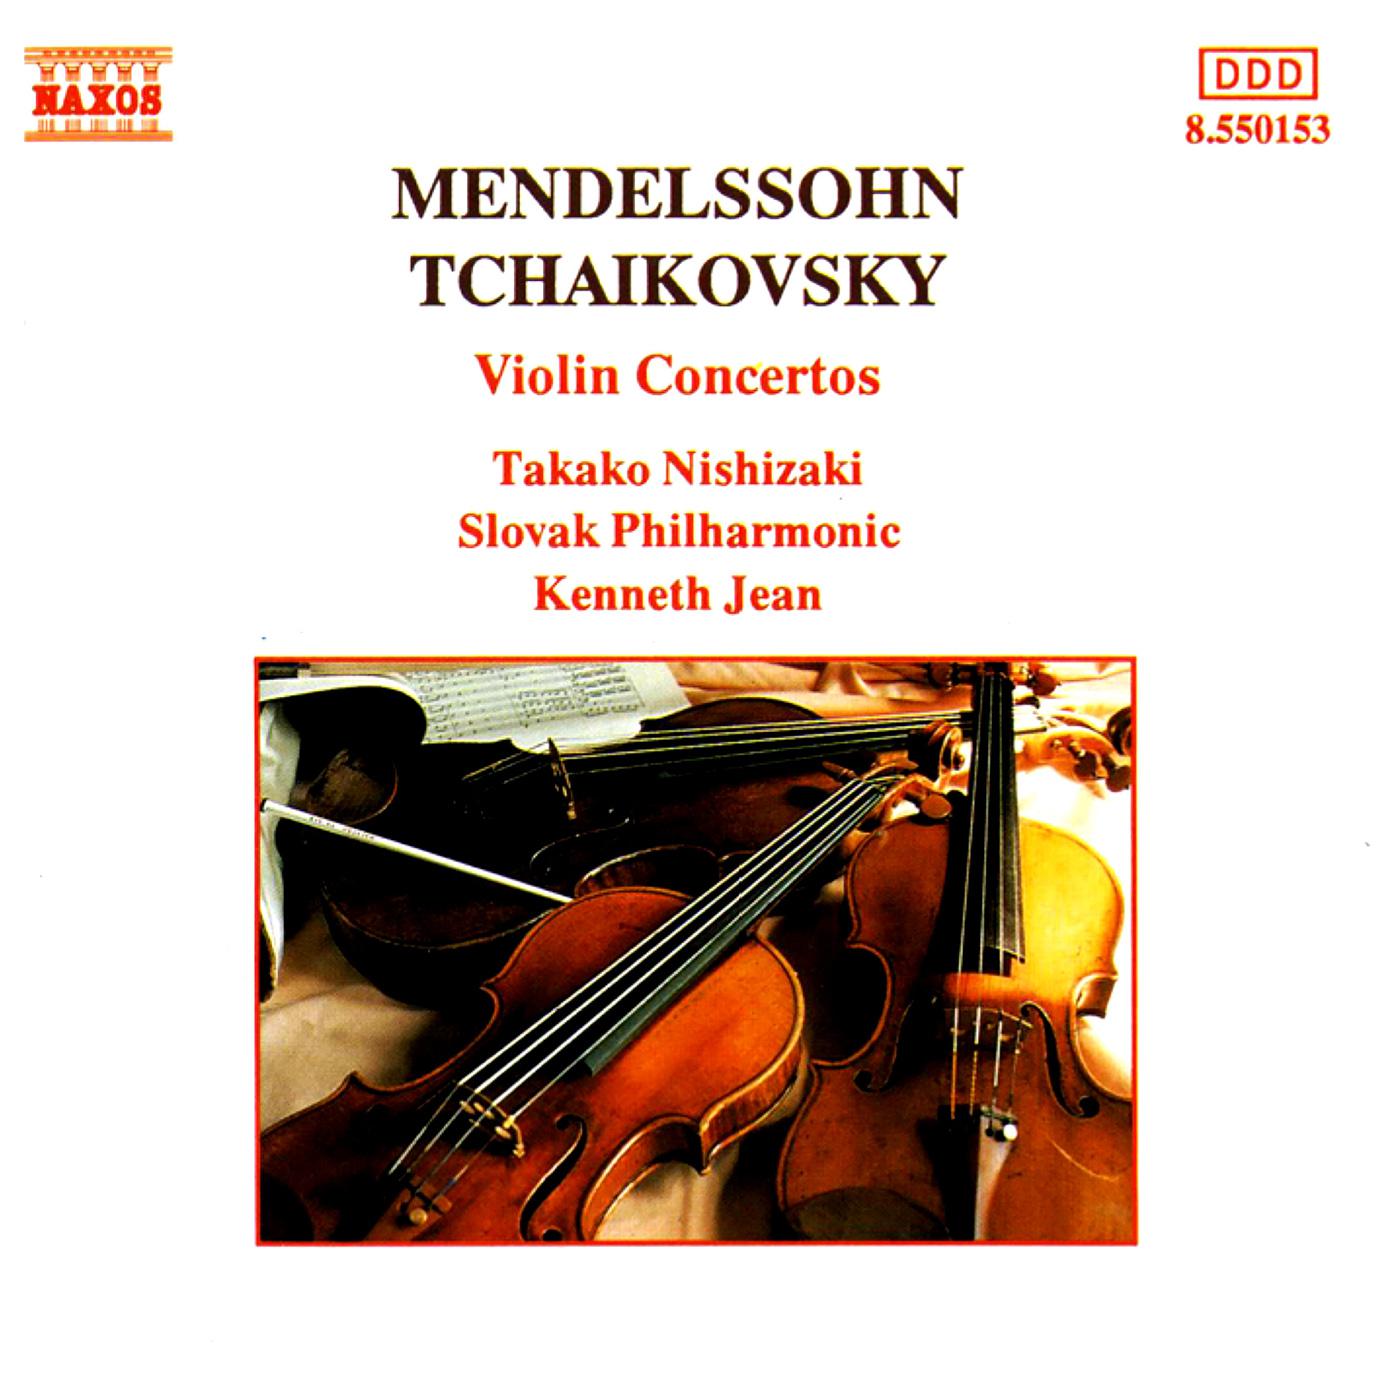 MENDELSSOHN: Violin Concerto in E Minor / TCHAIKOVSKY: Violin Concerto in D Major专辑